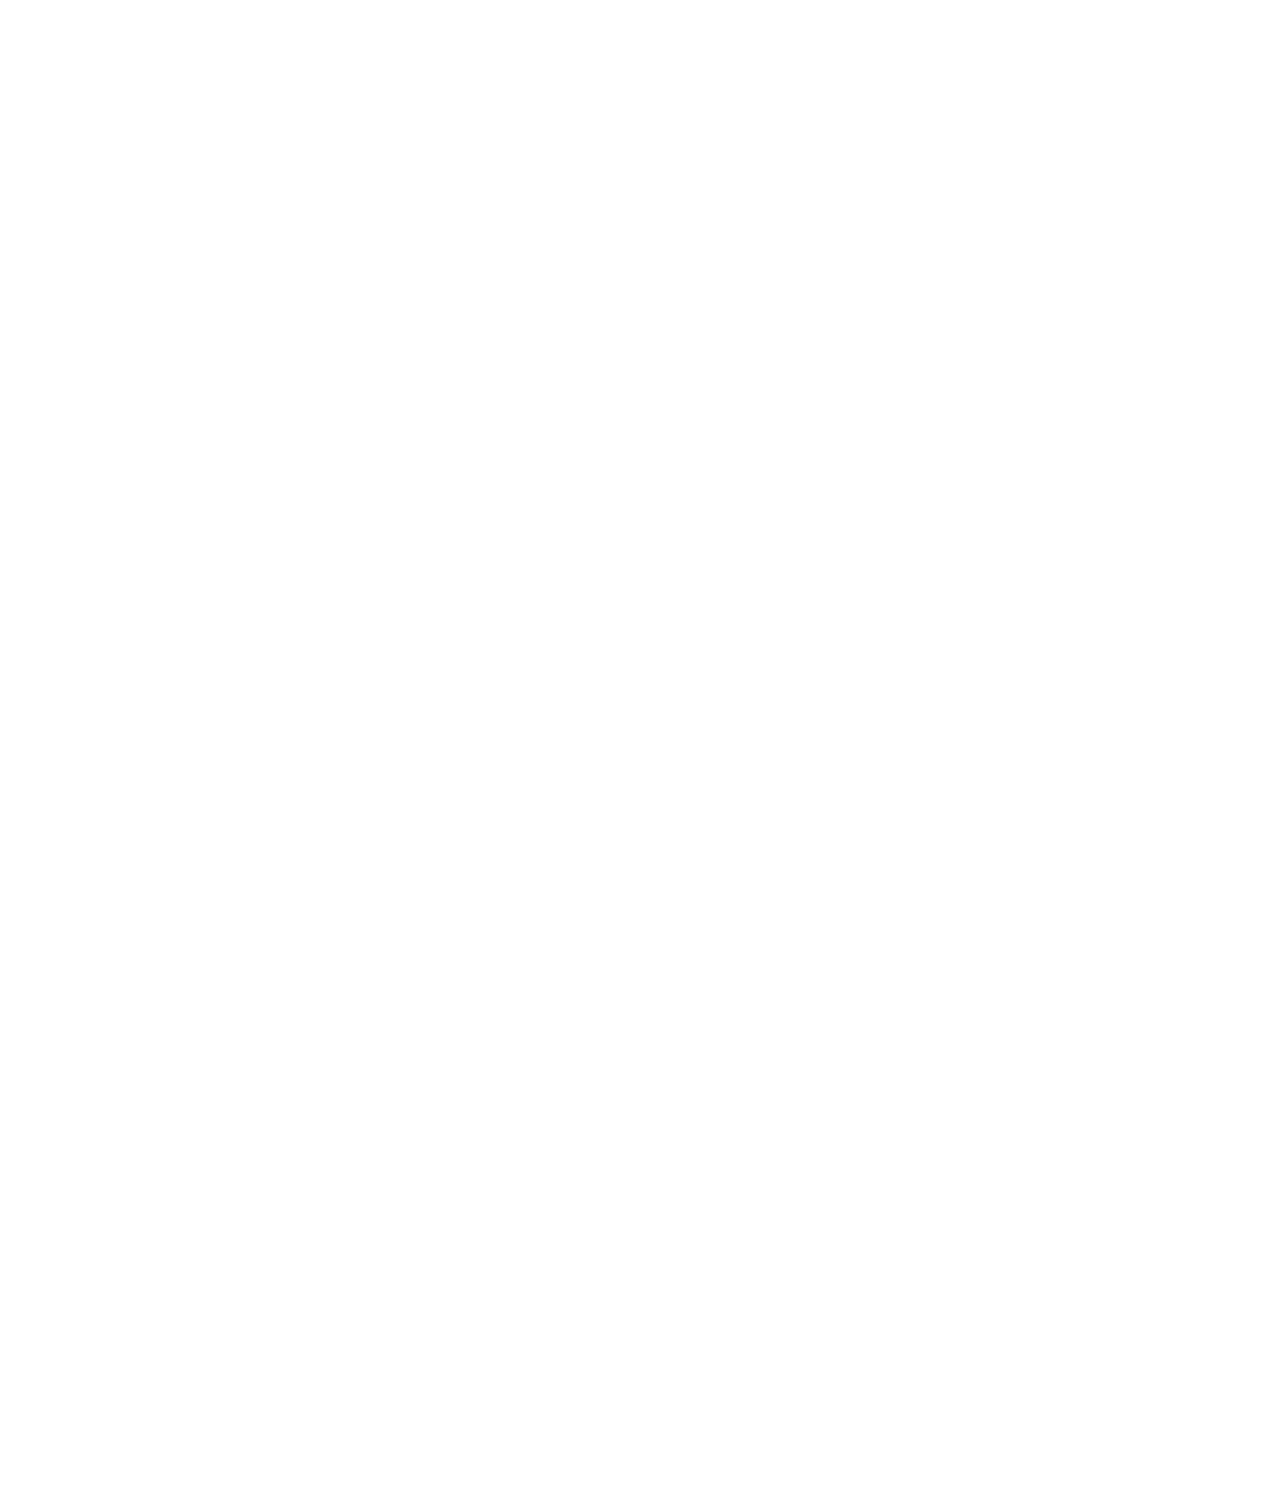 Apple logo for dark backgrounds (transparent PNG)